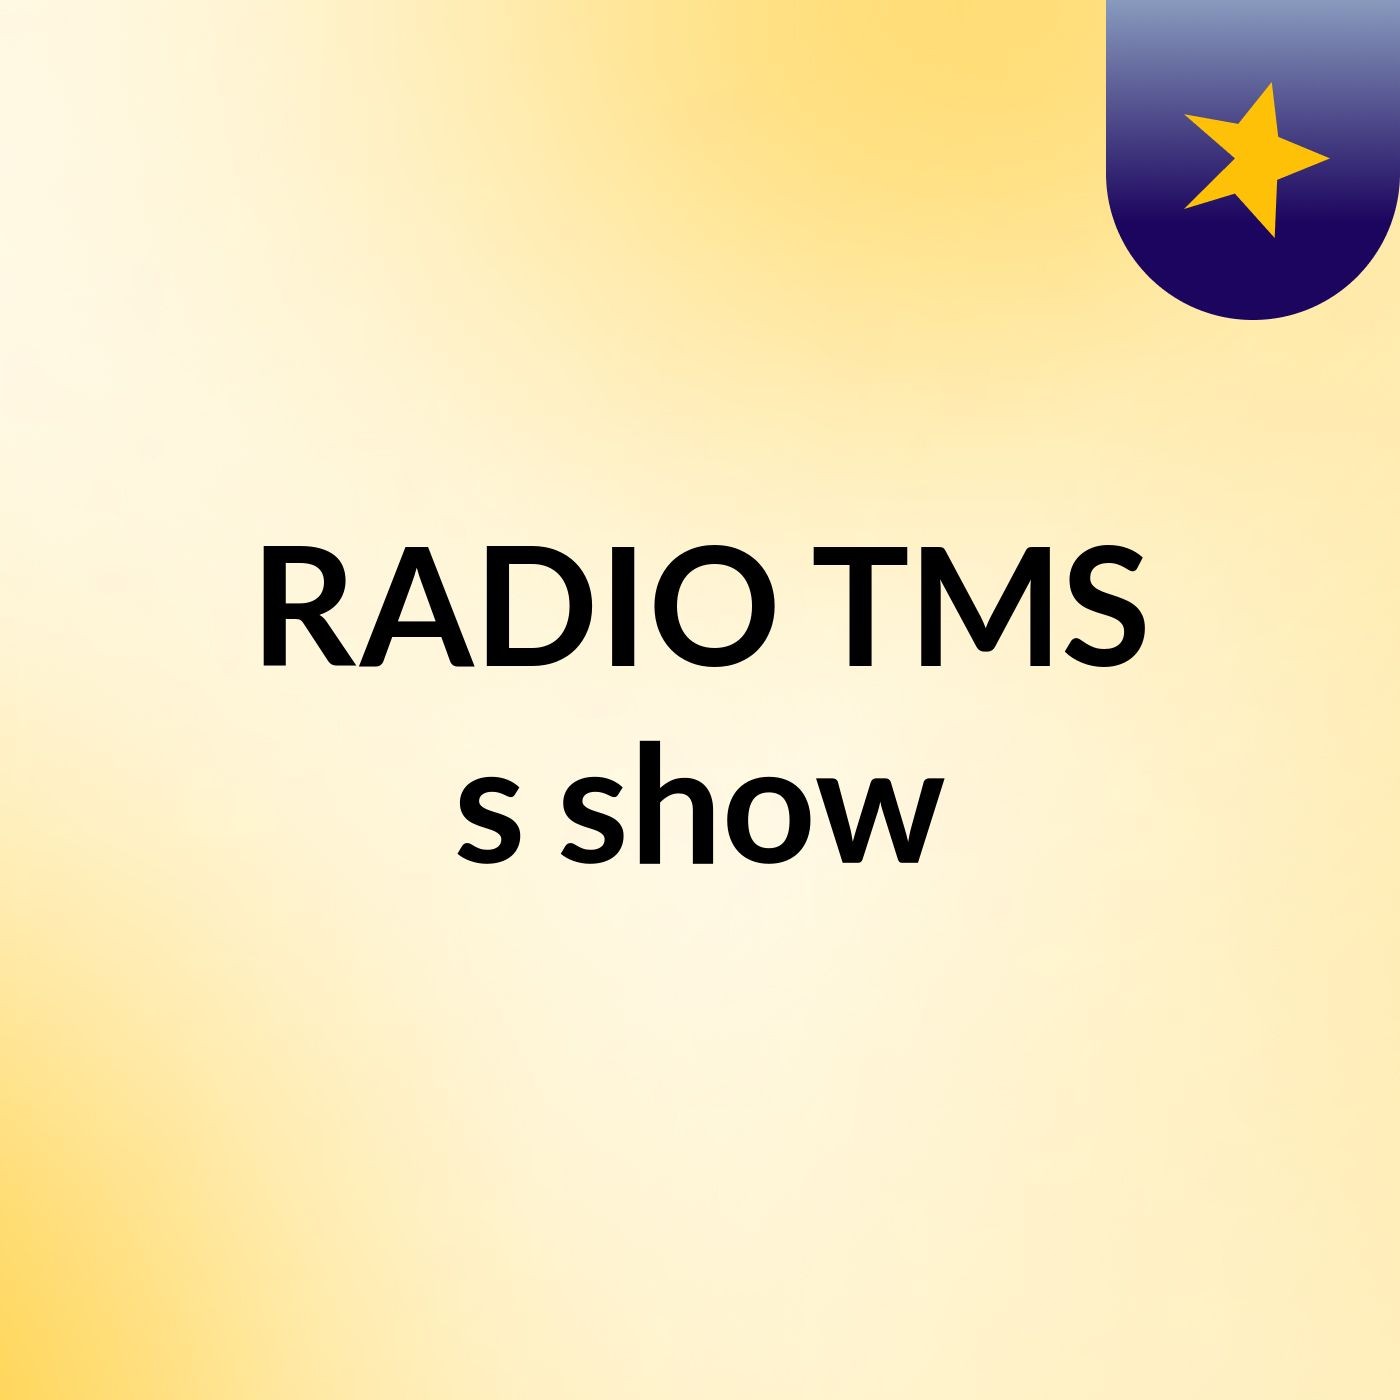 RADIO TMS's show